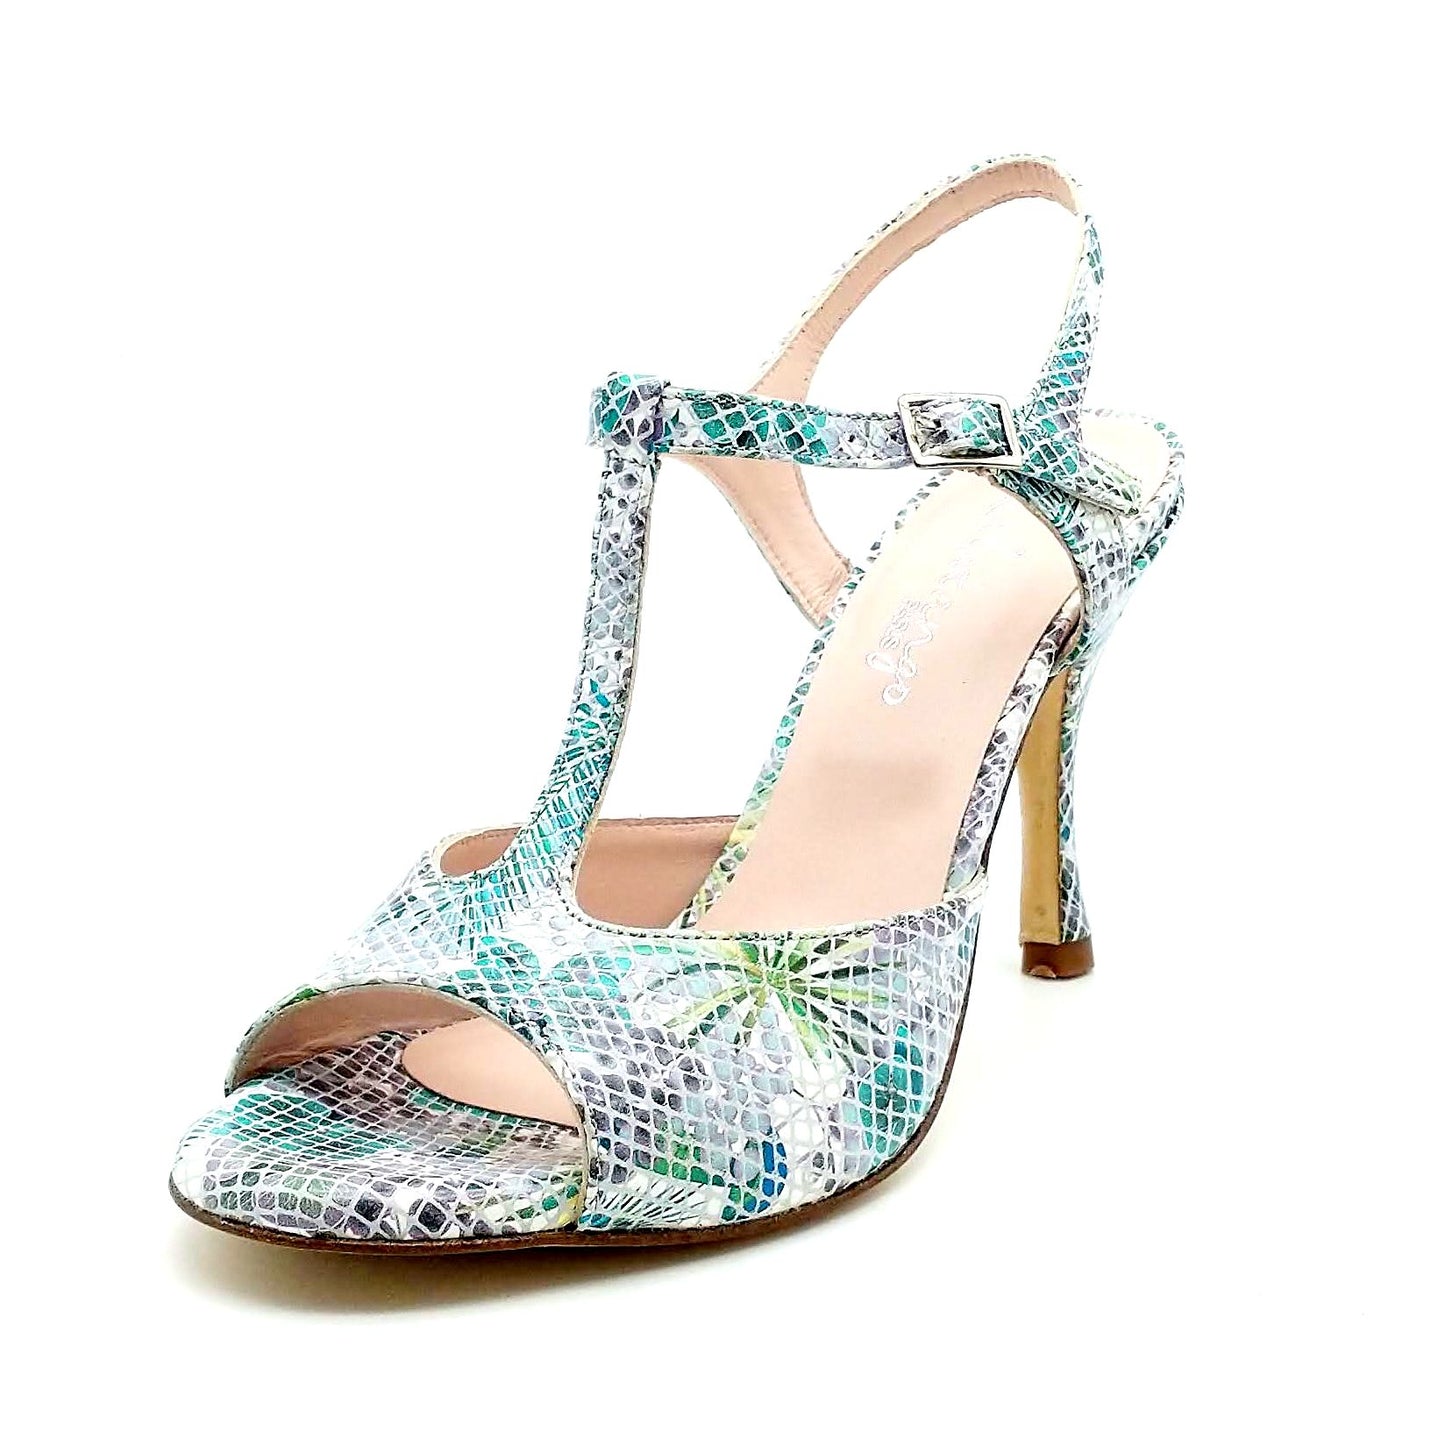 Sencillo blue tropic heels 8cm